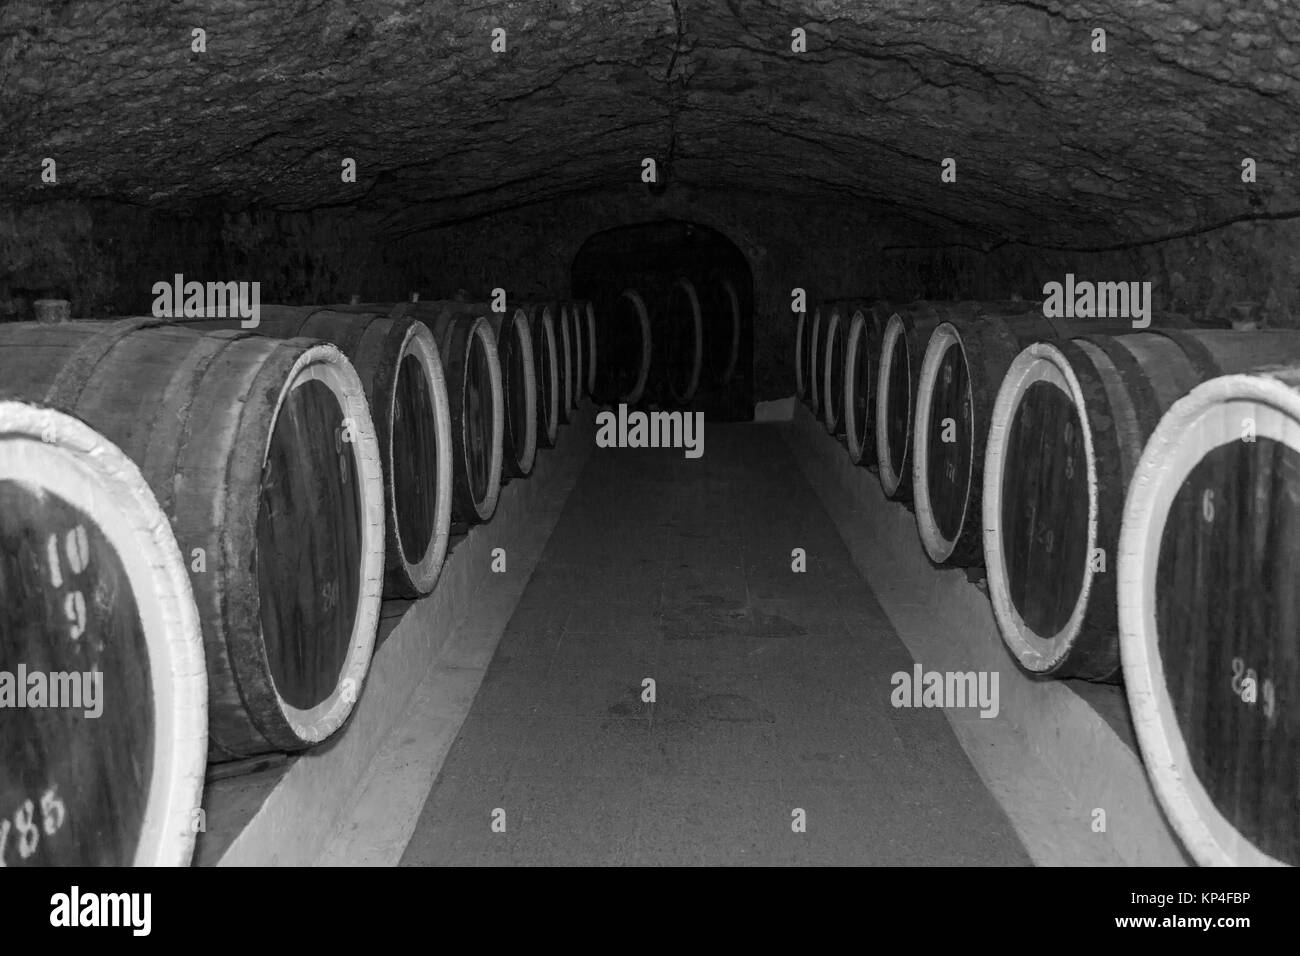 Une ancienne cave à vin avec des tonneaux en chêne, de barils de vin dans des caves anciennes Banque D'Images